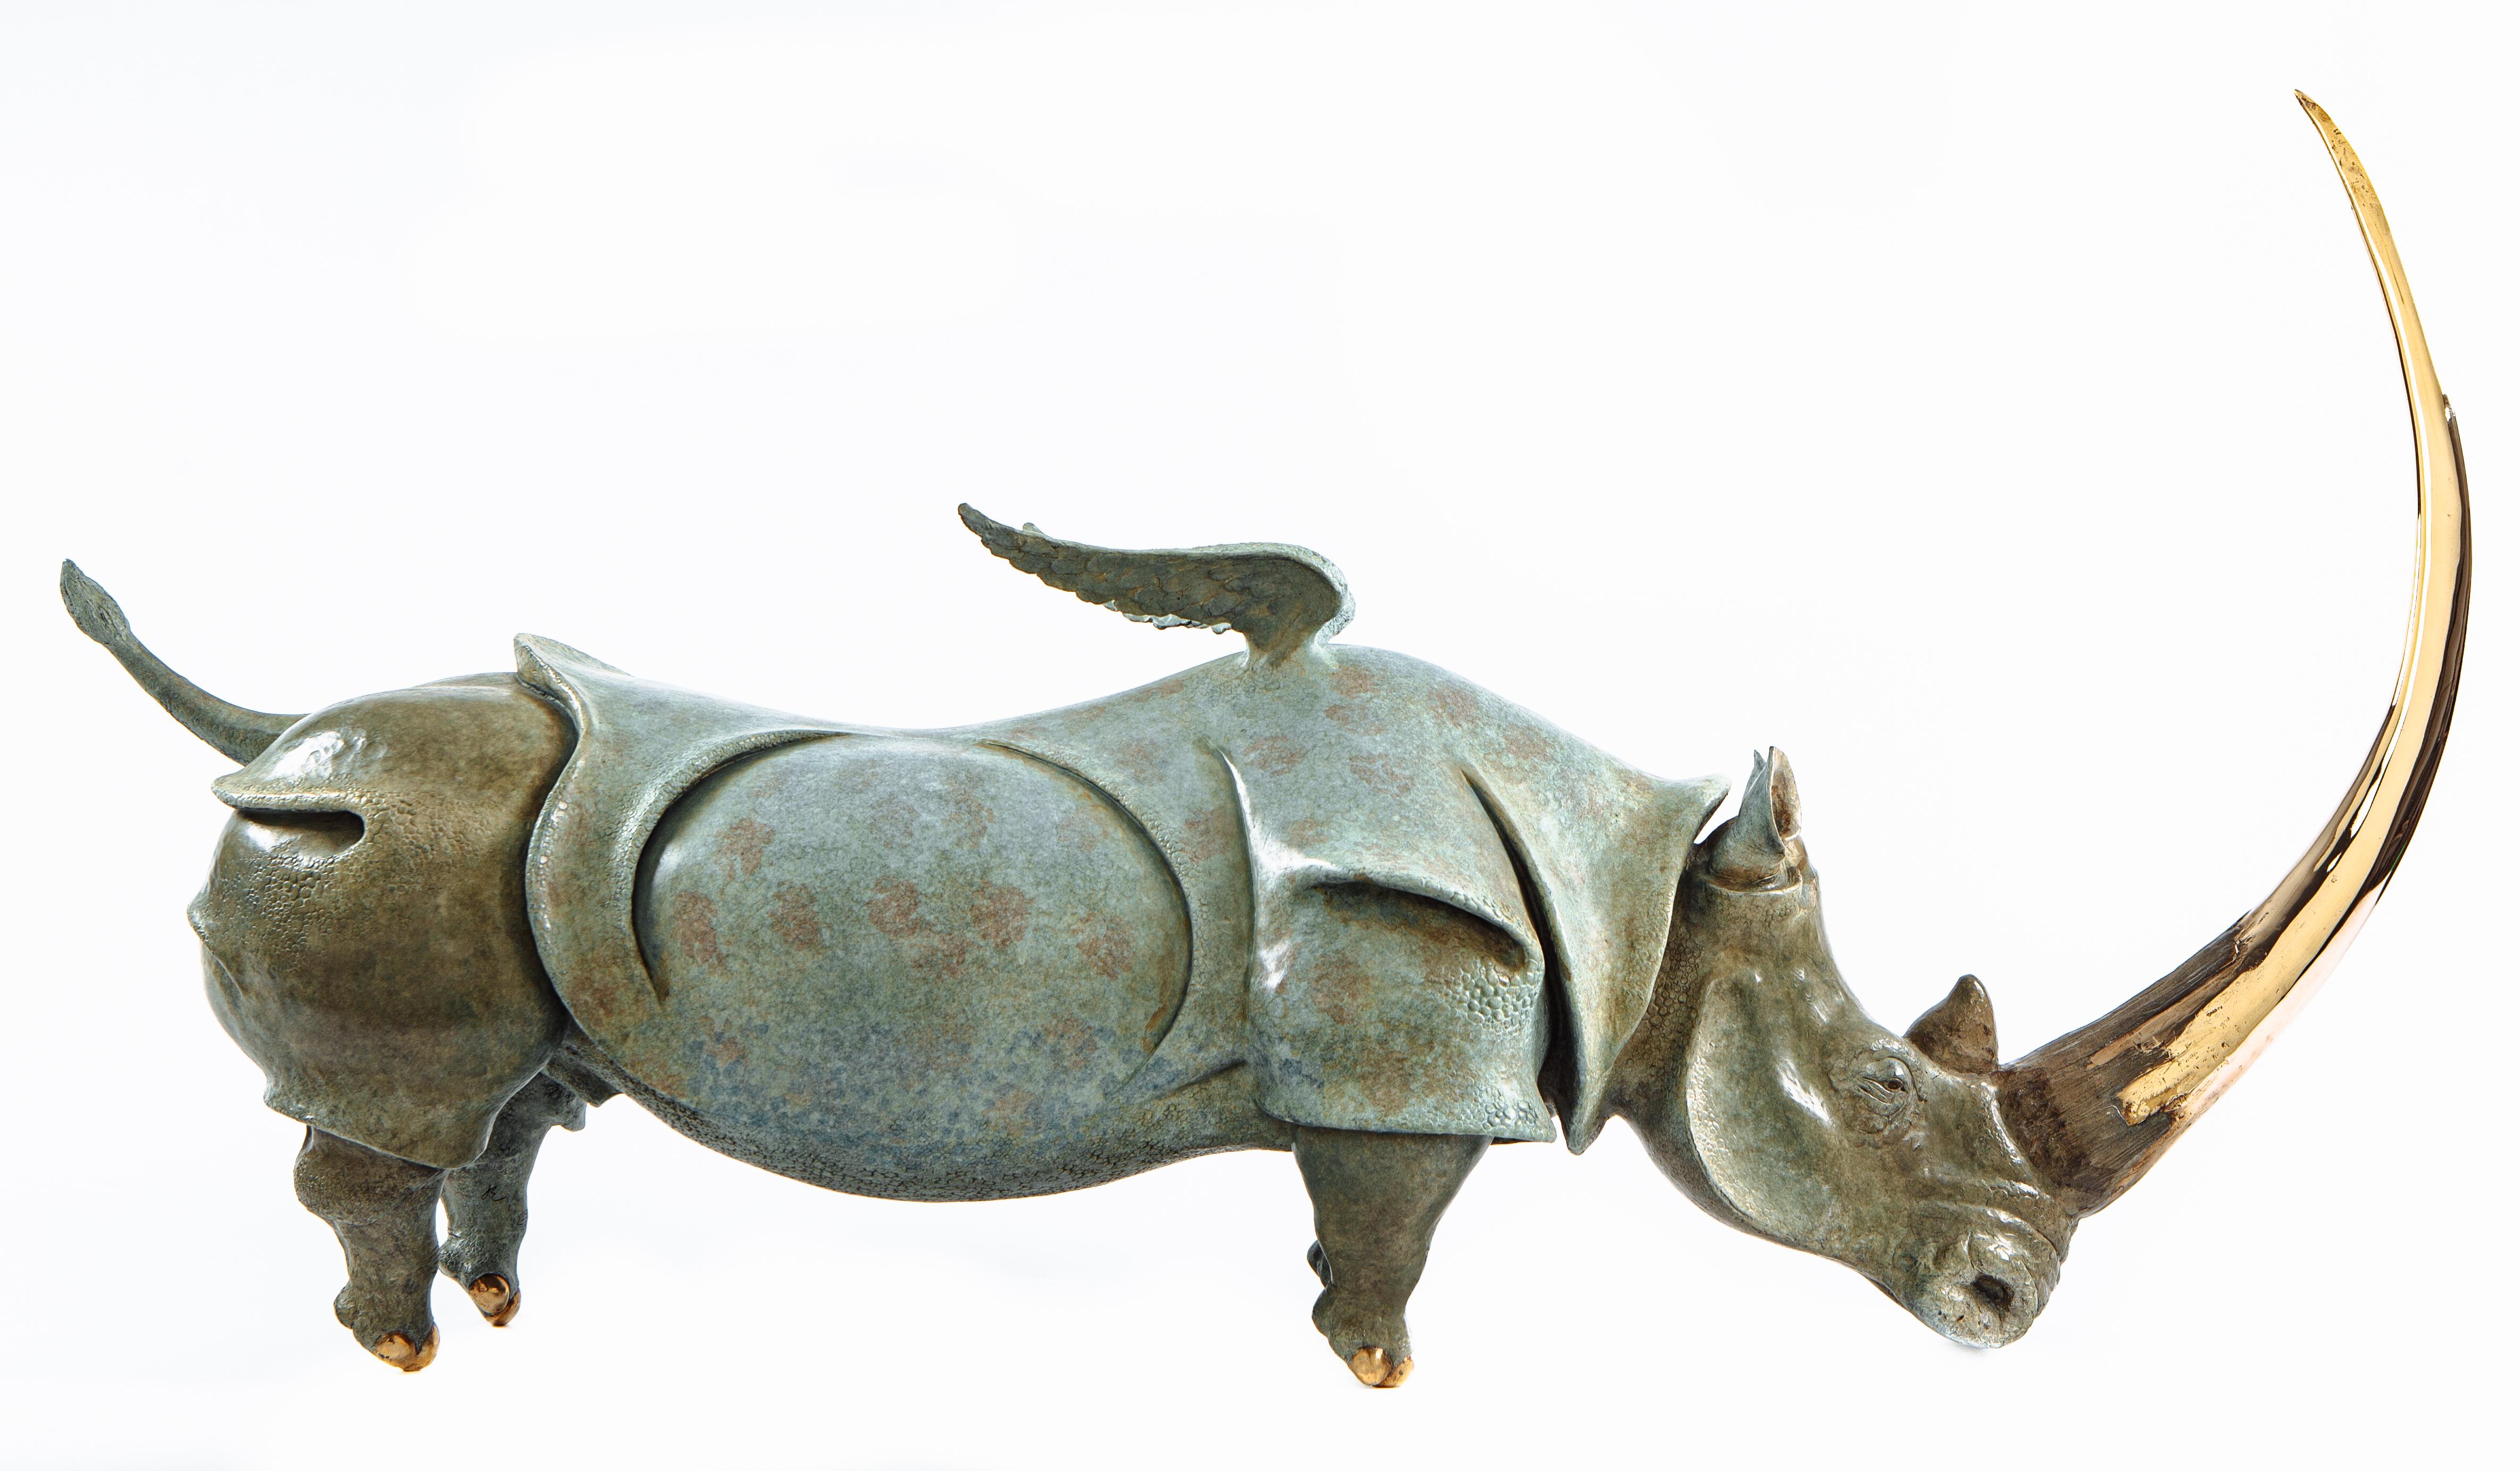 Victor Mikhailov Figurative Sculpture - Dream - original bronze cast sculpture wildlife animal figurative modern art